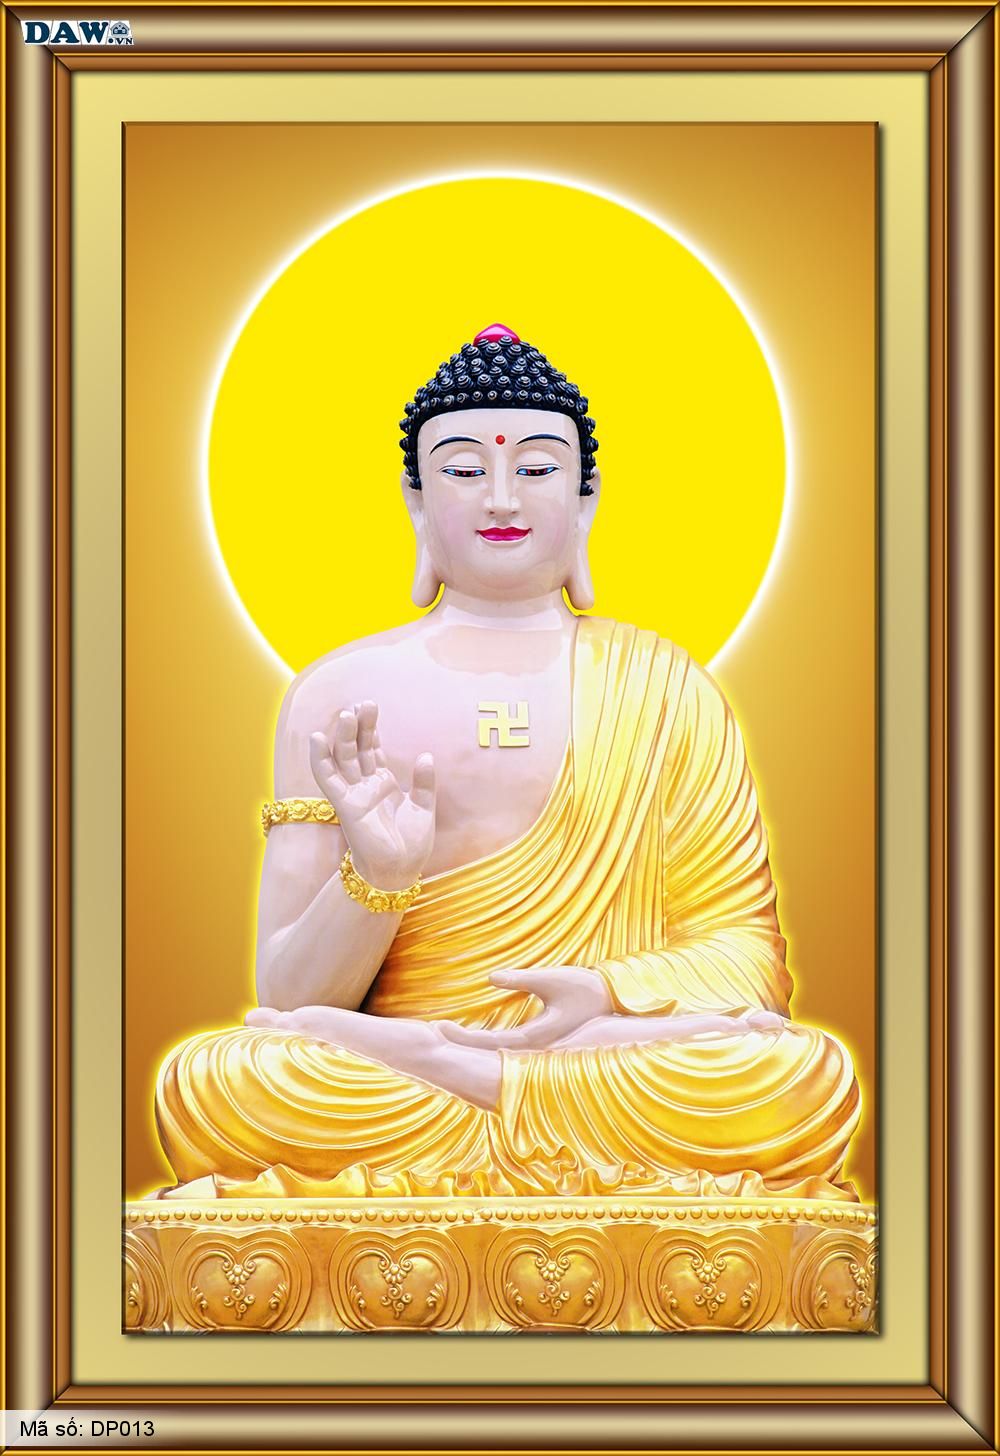 Hình ảnh tượng Phật ngồi thiền 3D là một tác phẩm tuyệt đẹp kết hợp giữa nghệ thuật và tâm linh. Với hình ảnh Phật ngồi thiền, bạn sẽ cảm nhận được sự thanh tịnh và sự thấu hiểu trong cuộc sống. Hình ảnh chân thực và sống động tạo ra một bức tranh tuyệt đẹp về Phật Giáo.